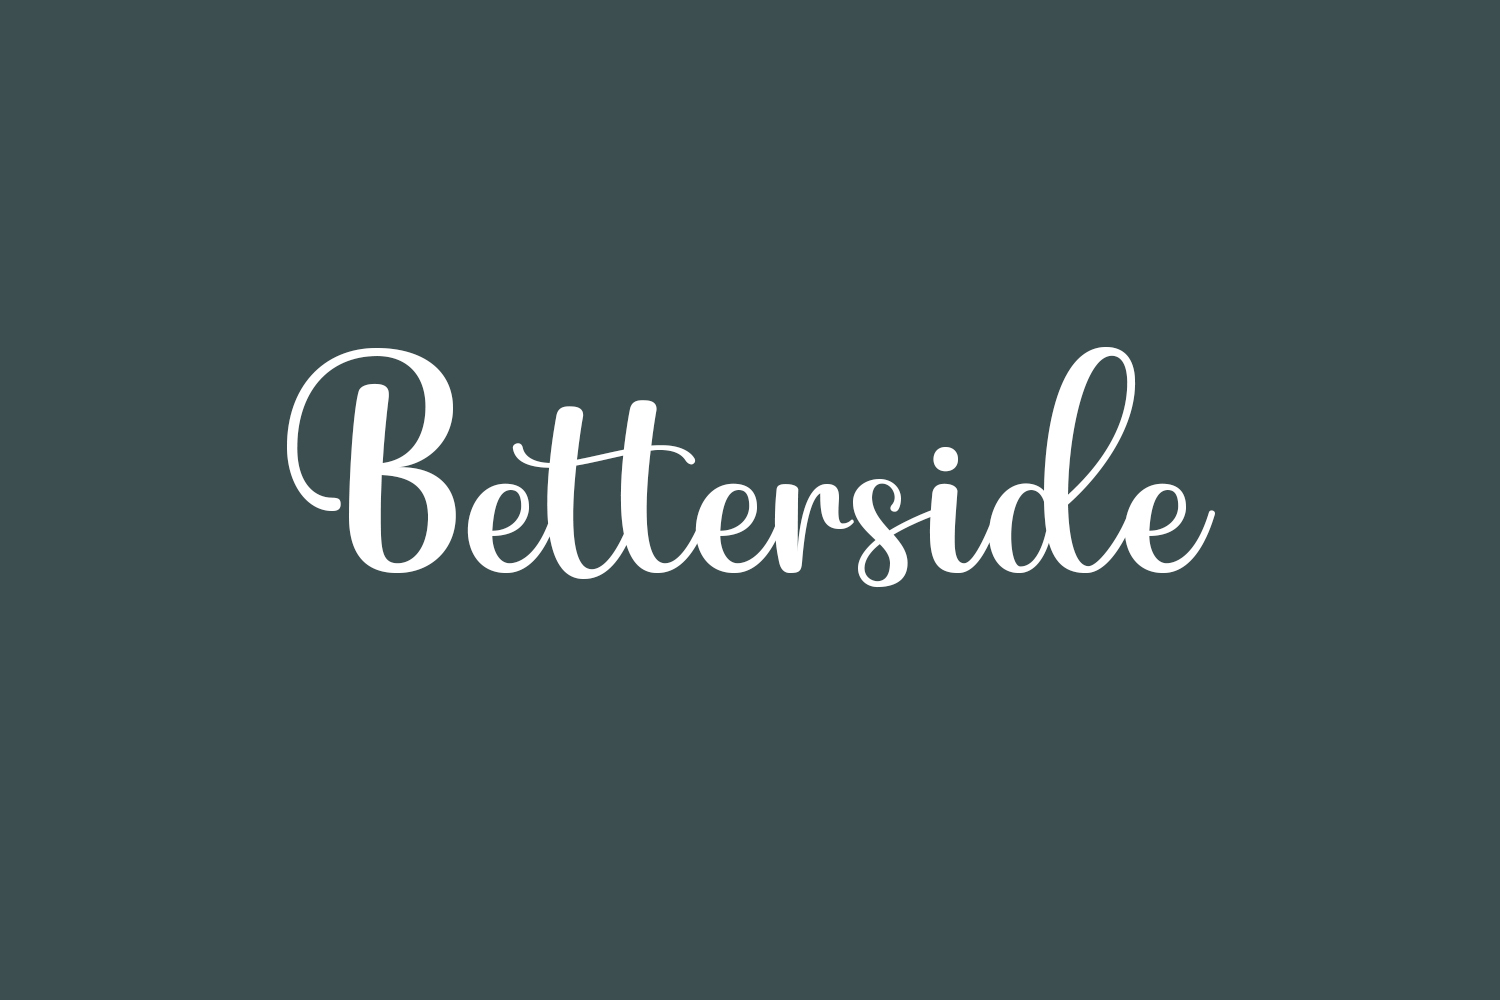 Betterside Free Font